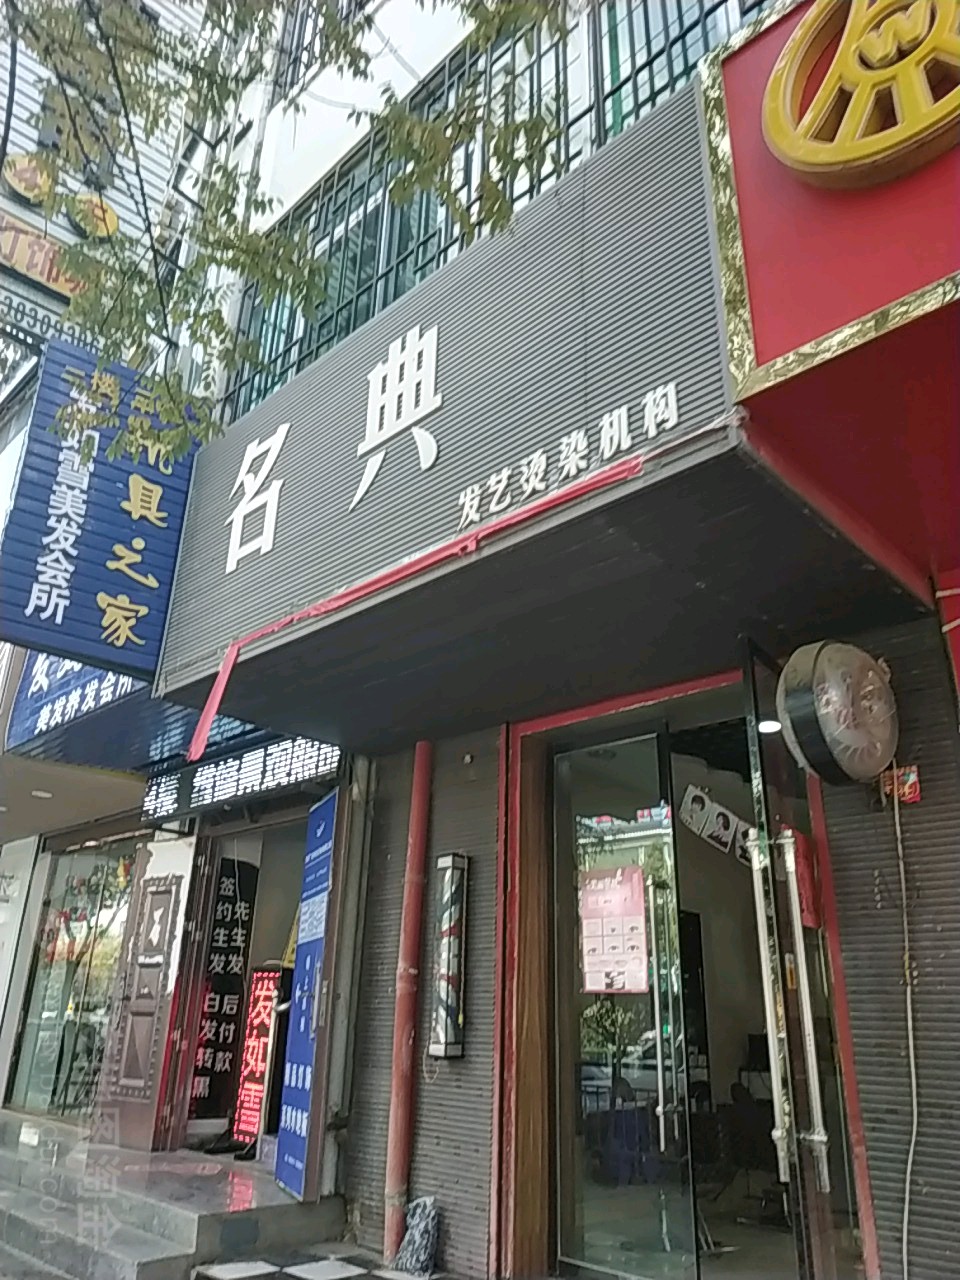 名典发艺社烫染机构(东新西路店)